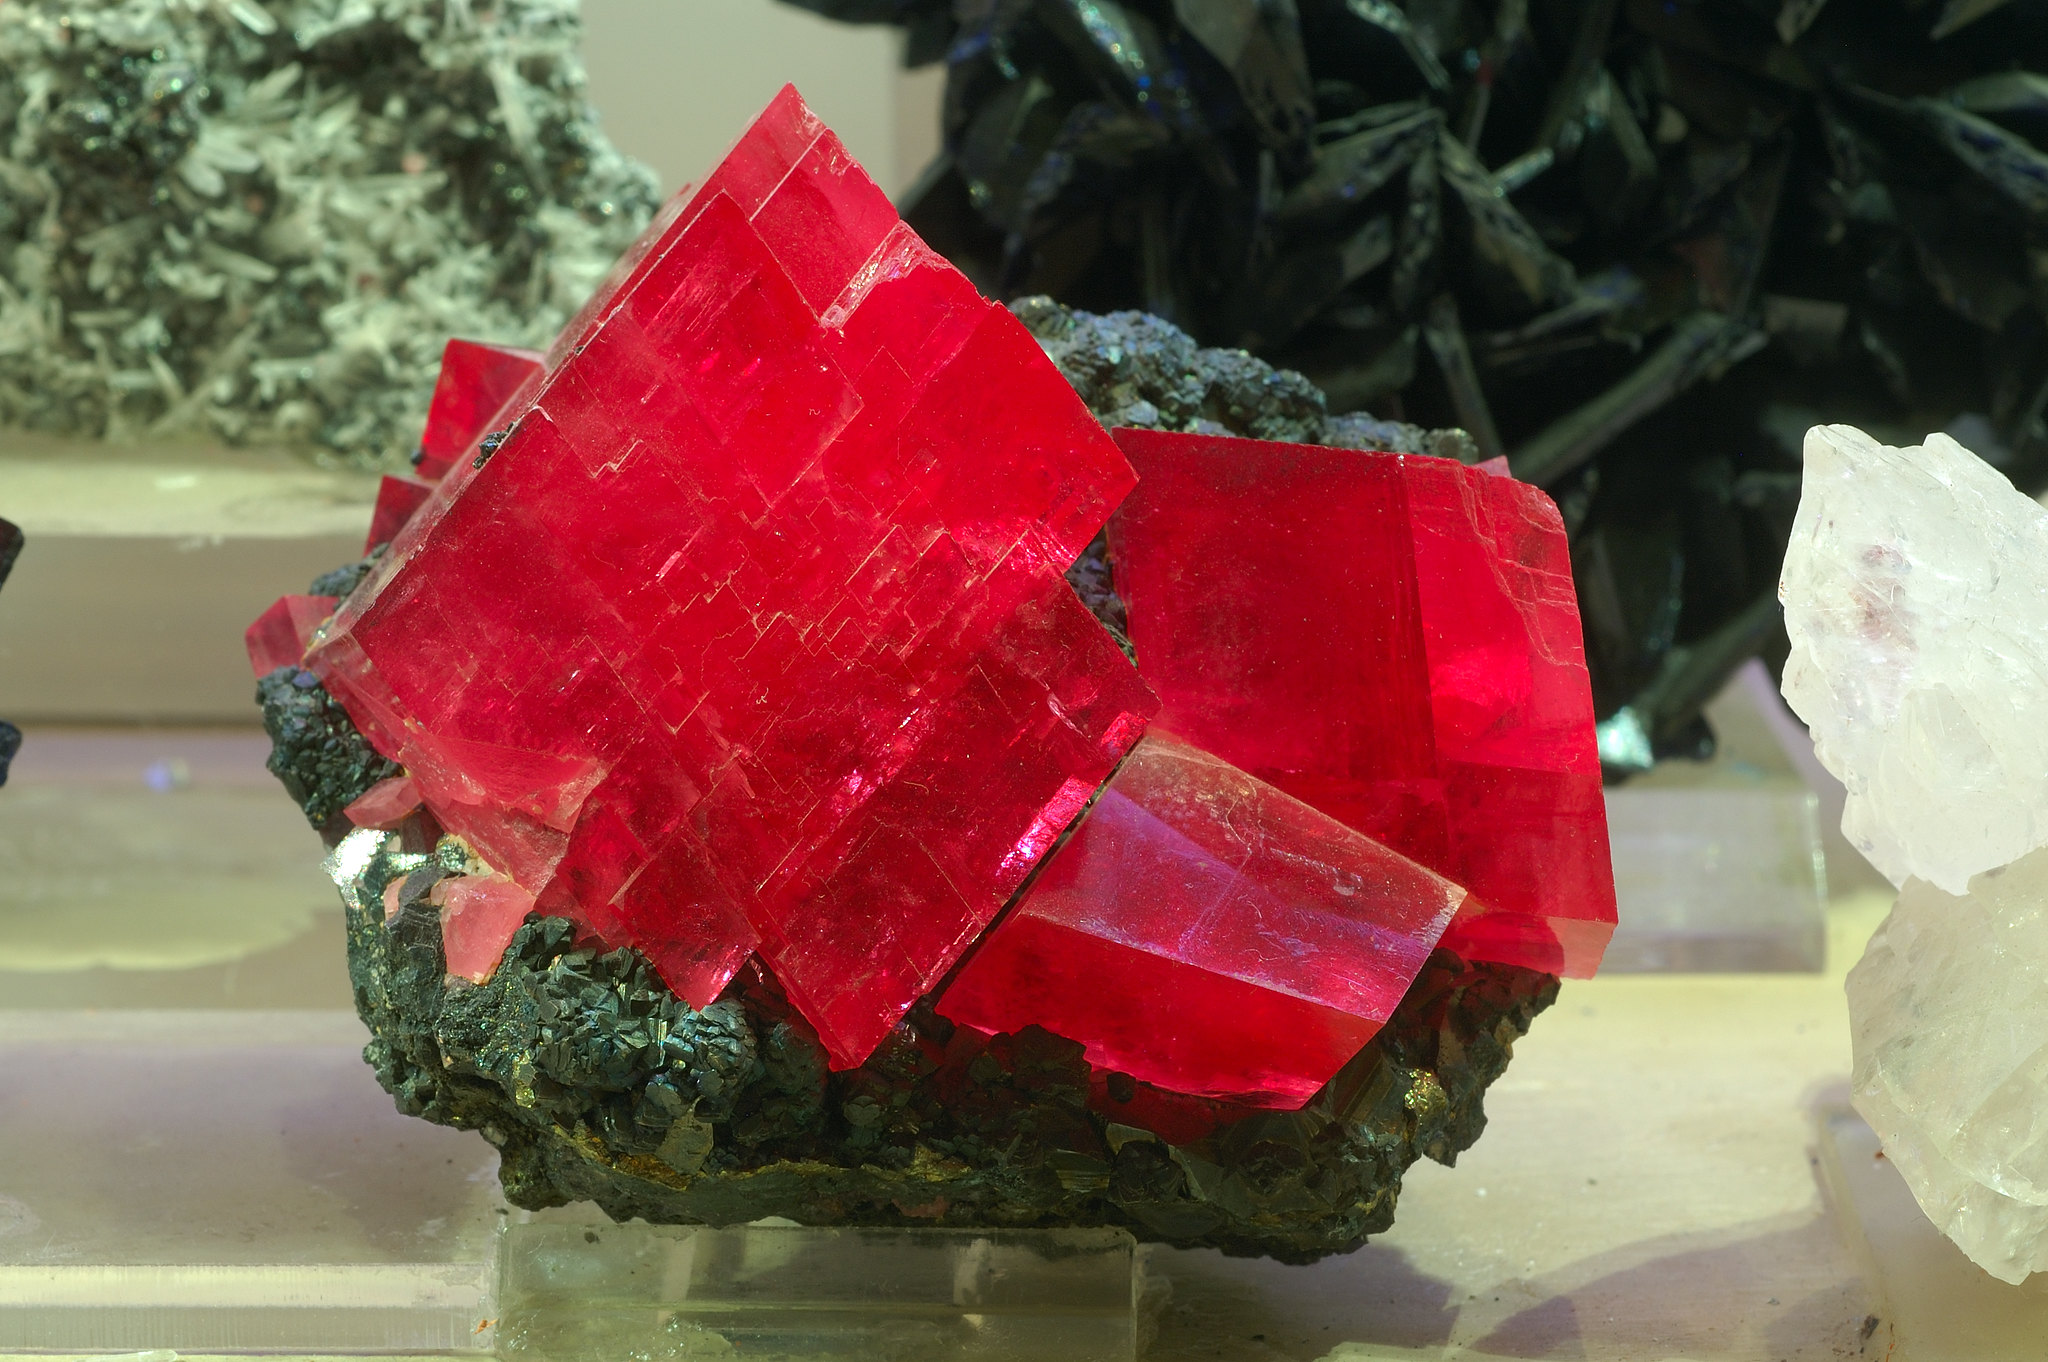 bloc de cristaux de rhodochrosite exposé rosé-rouge montrant des formes ordonnées faites de lignes droites et d'angles qui montrent une structure cristalline. Sa couleur est transparente à translucide et elle est sur un morceau de roche.